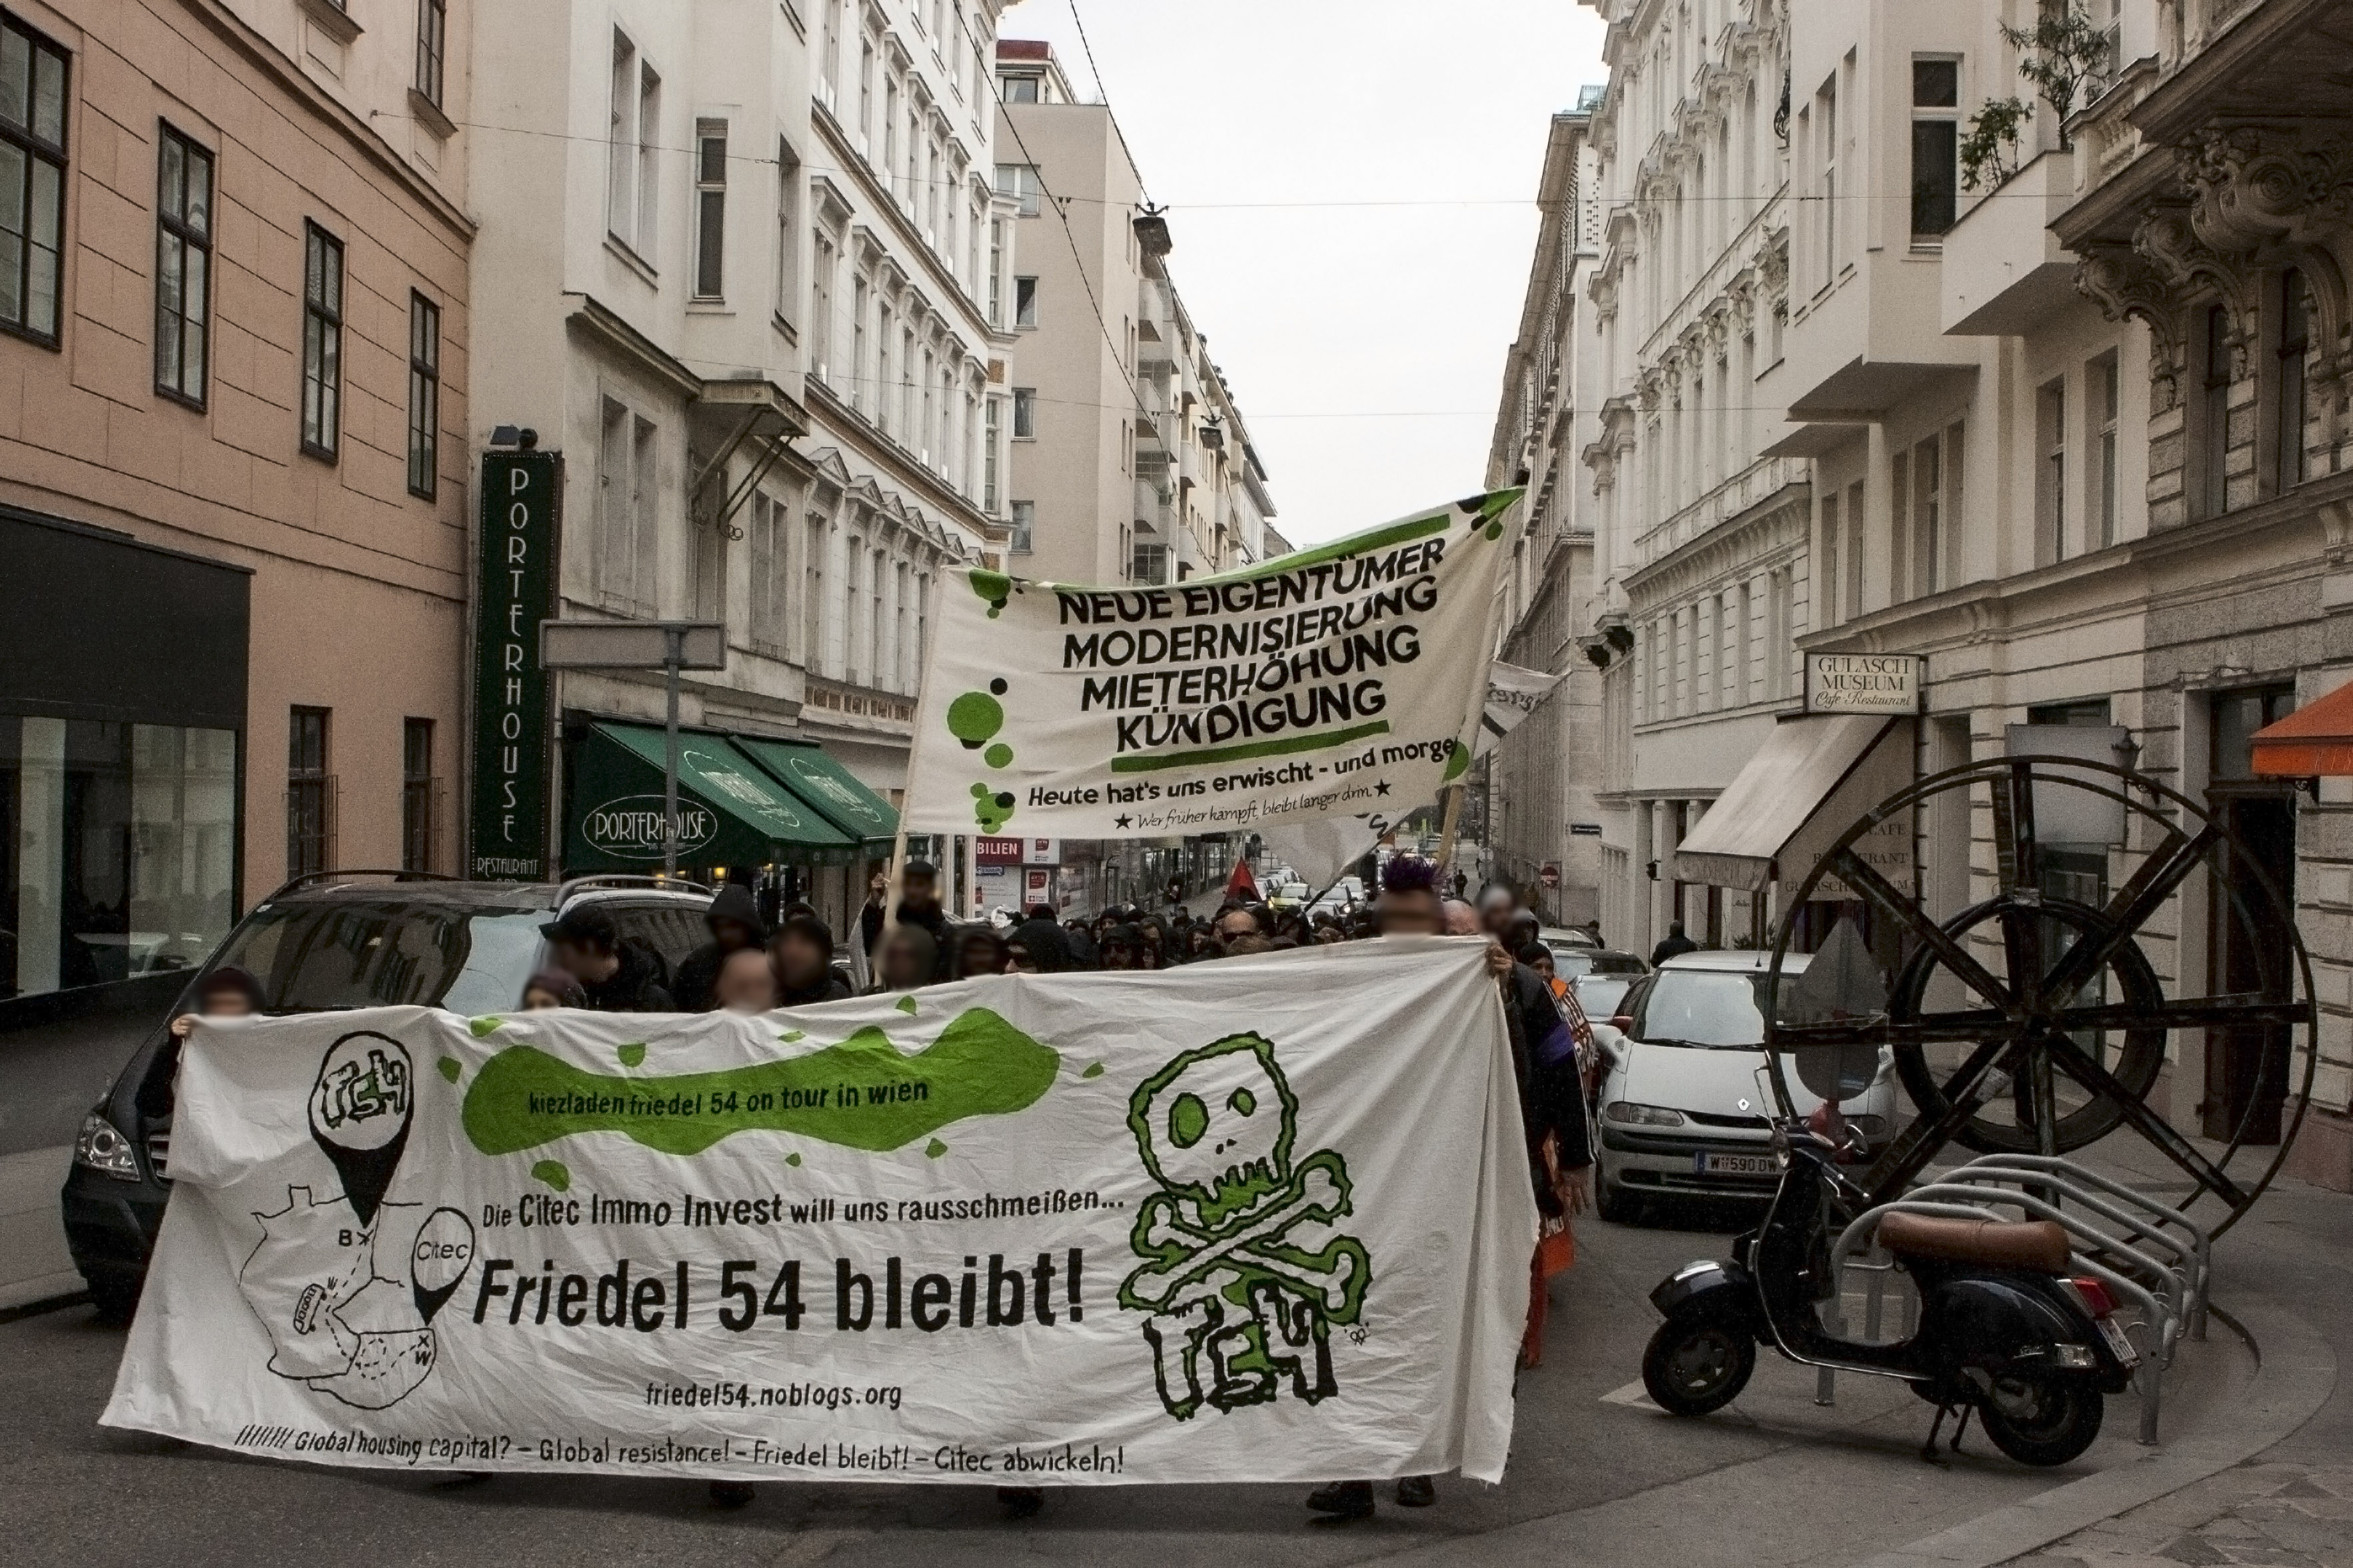 Pressemitteilung zur Demonstration am 2. Tag der Wien-Reise